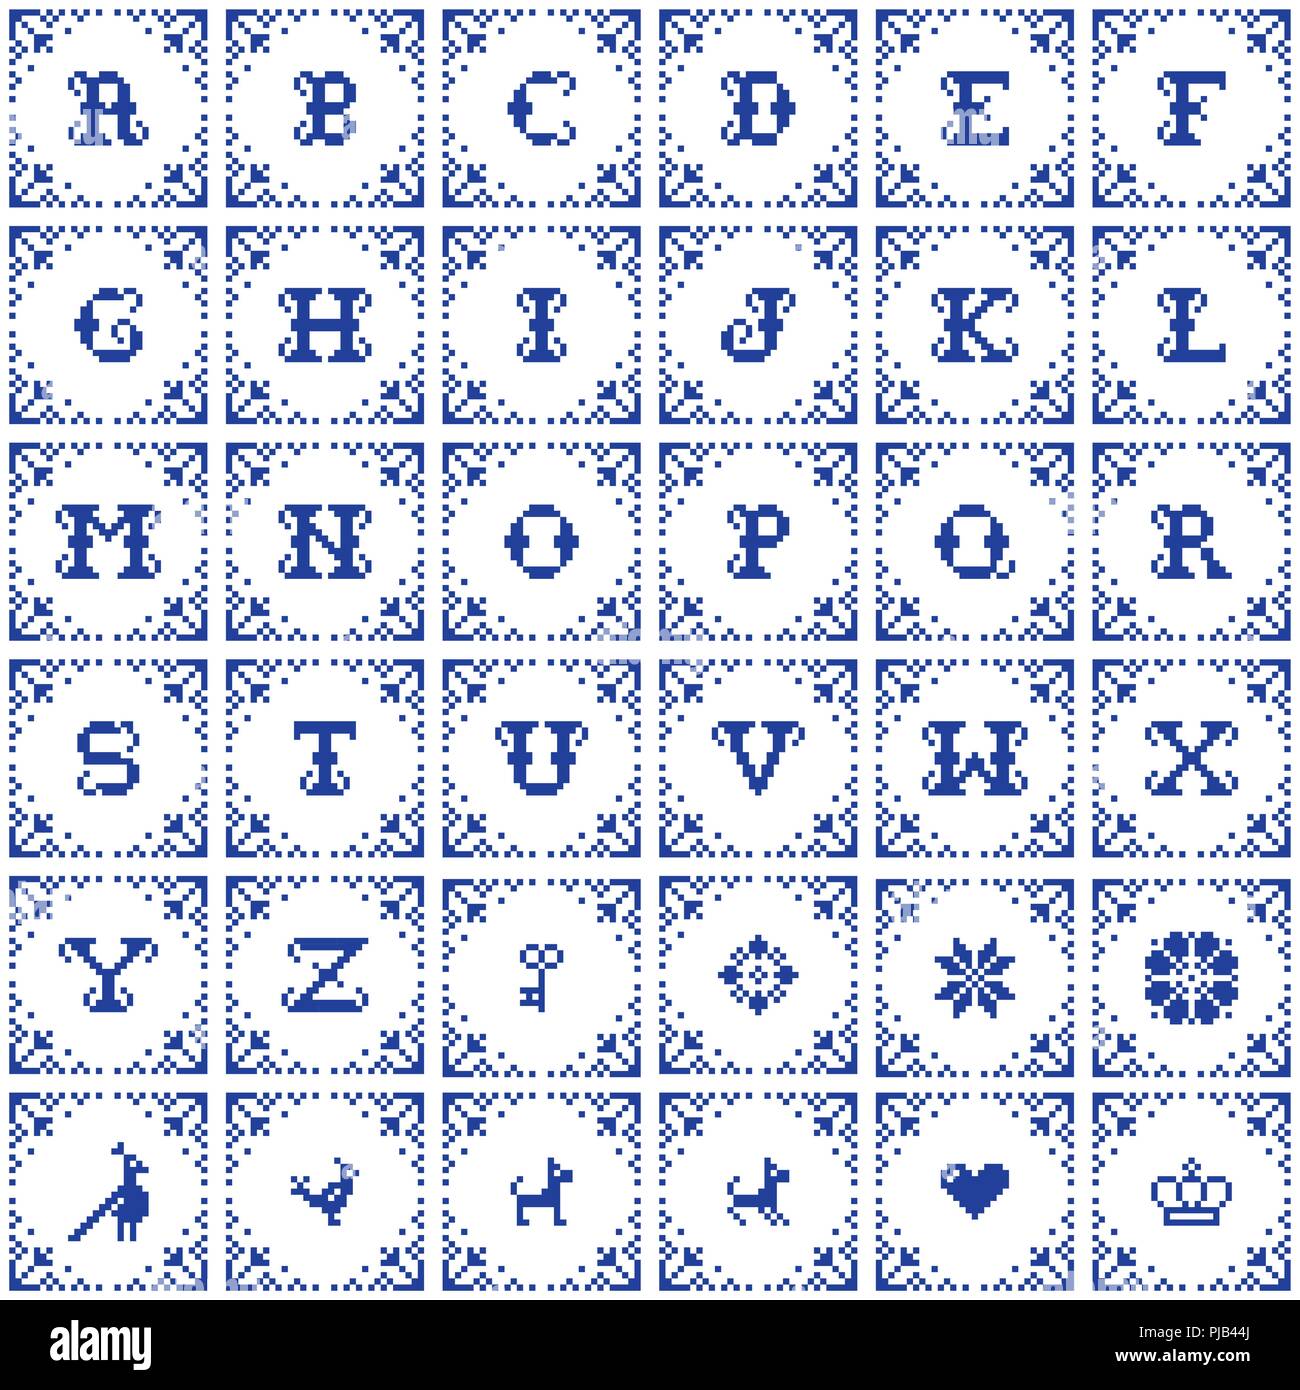 Punto croce alfabeto immagini e fotografie stock ad alta risoluzione - Alamy